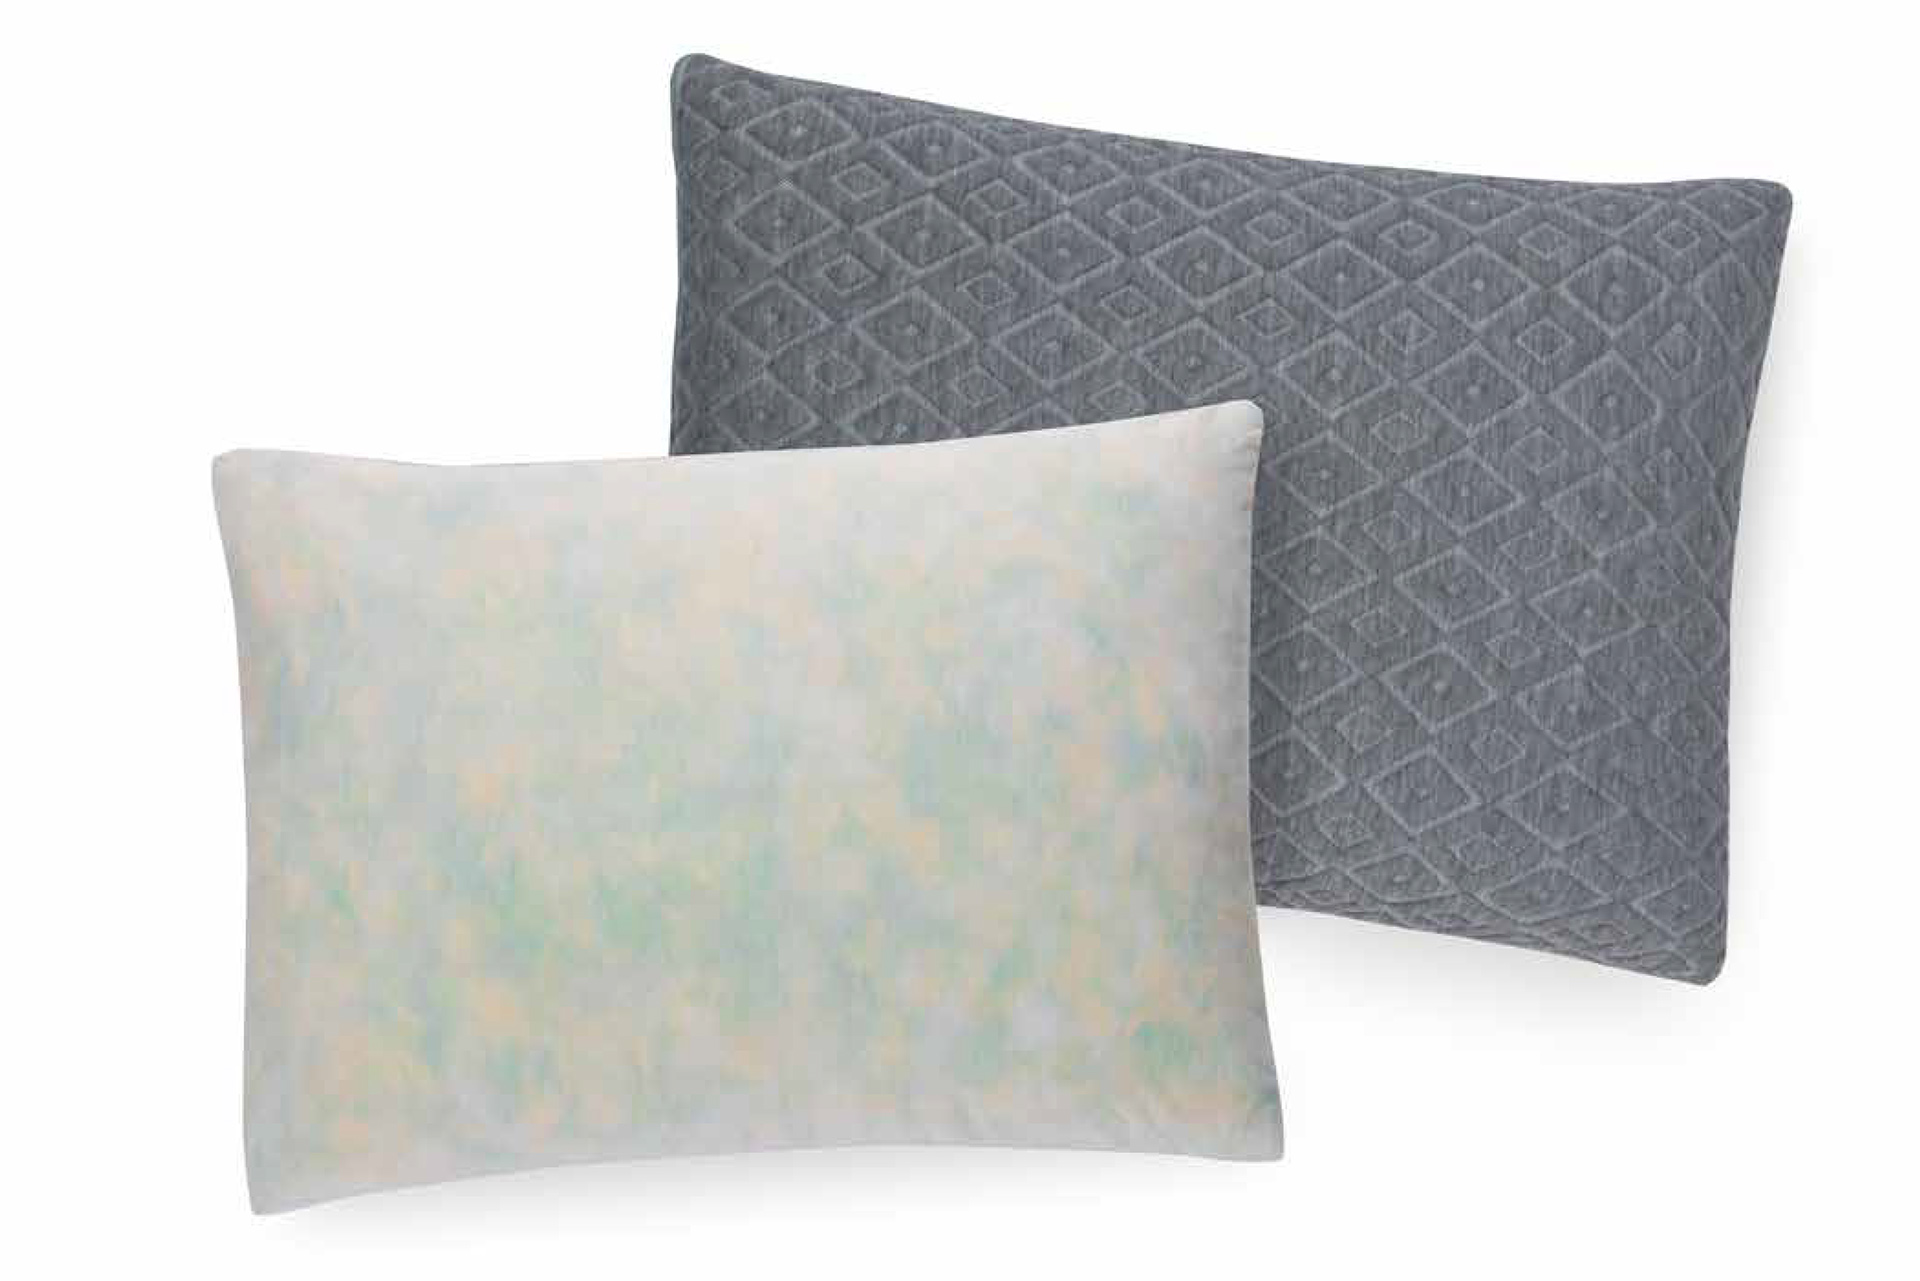 https://mattresskinginc.com/wp-content/uploads/2019/11/Mattress-King-Inc-Brooklyn-Bedding-Accessories-01-Pillows-01-Premium-Shredded-Foam-Pillow.jpg